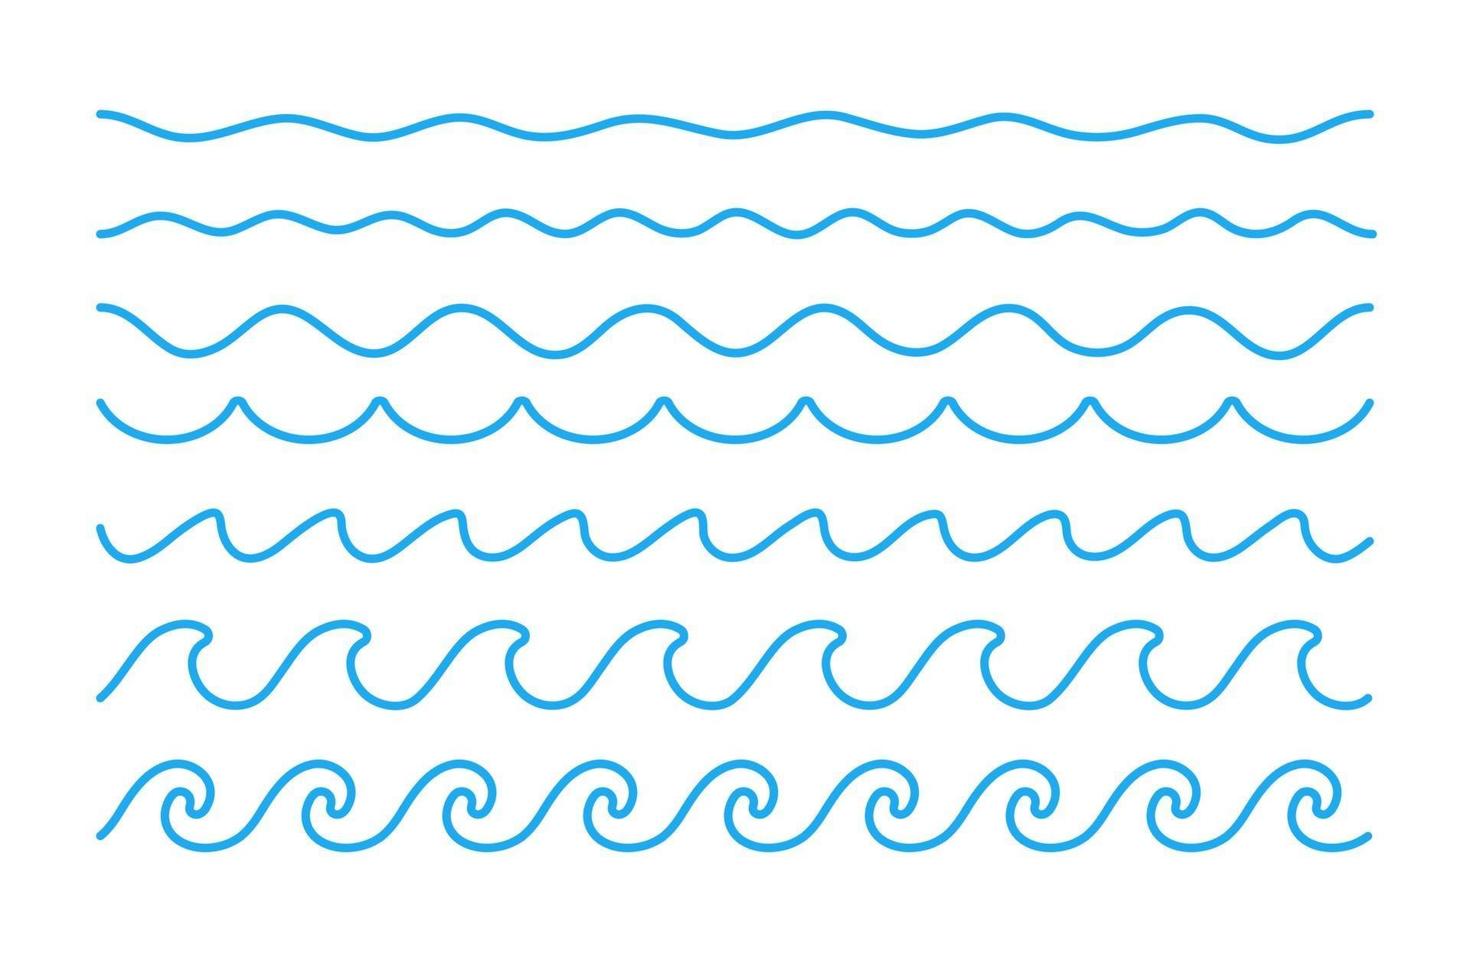 vetor de onda de água. ondas balançando em lagos e oceanos, isolados no fundo branco